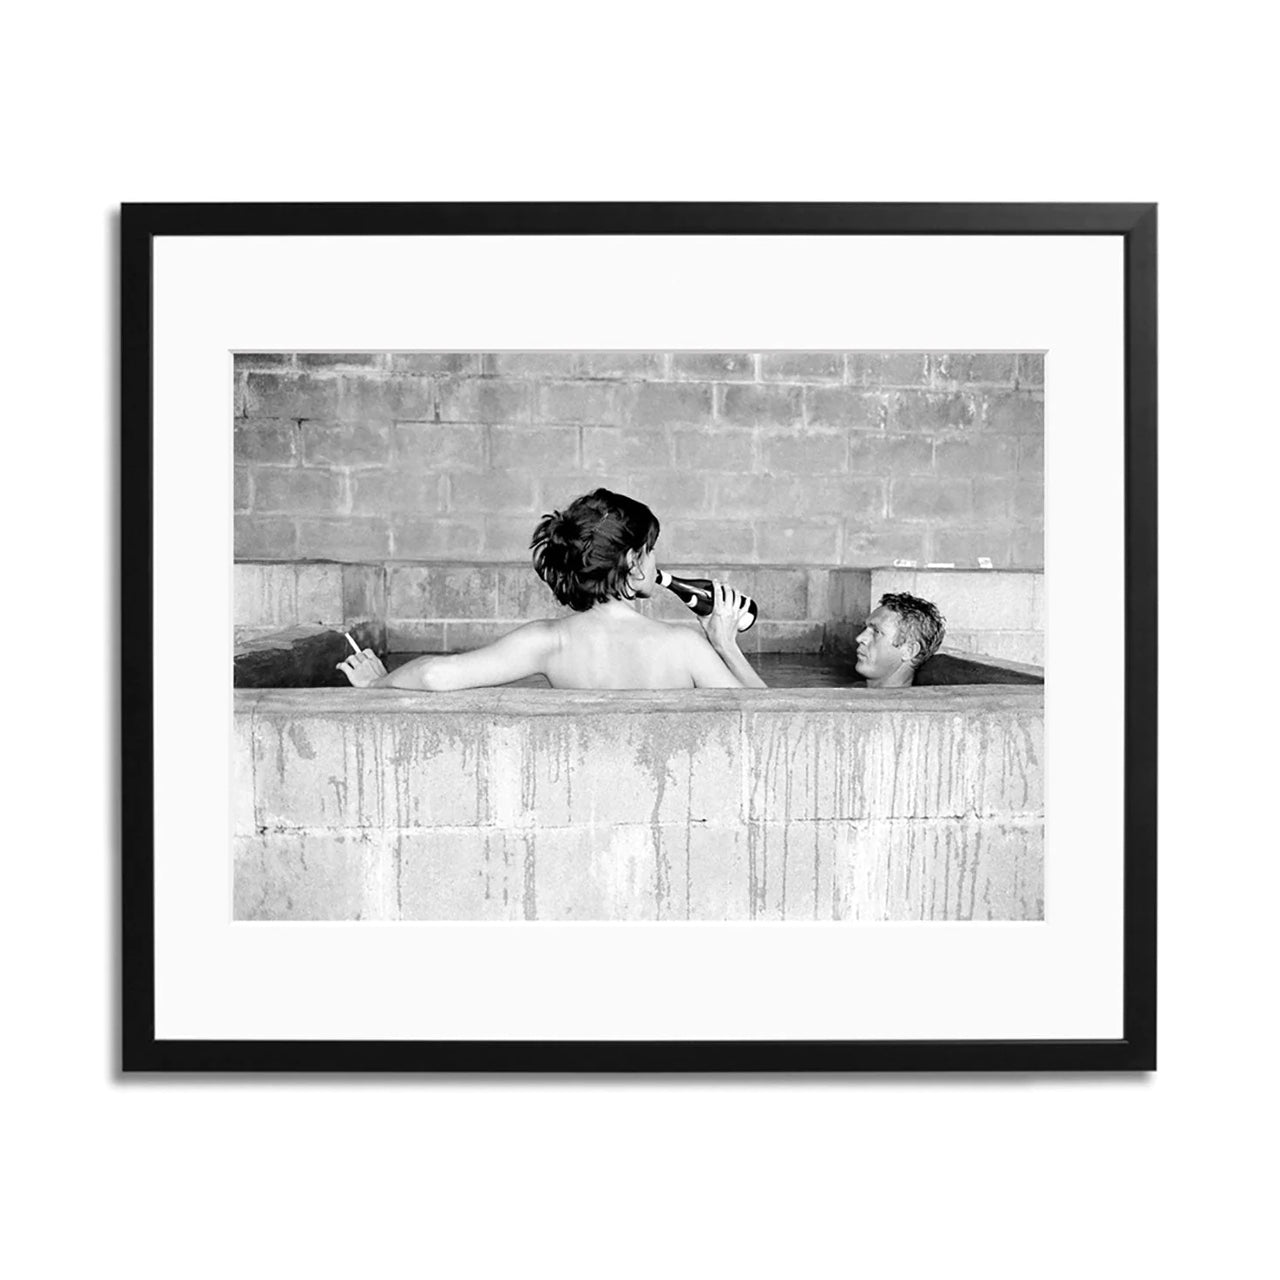 Steve McQueen & Wife Framed Print